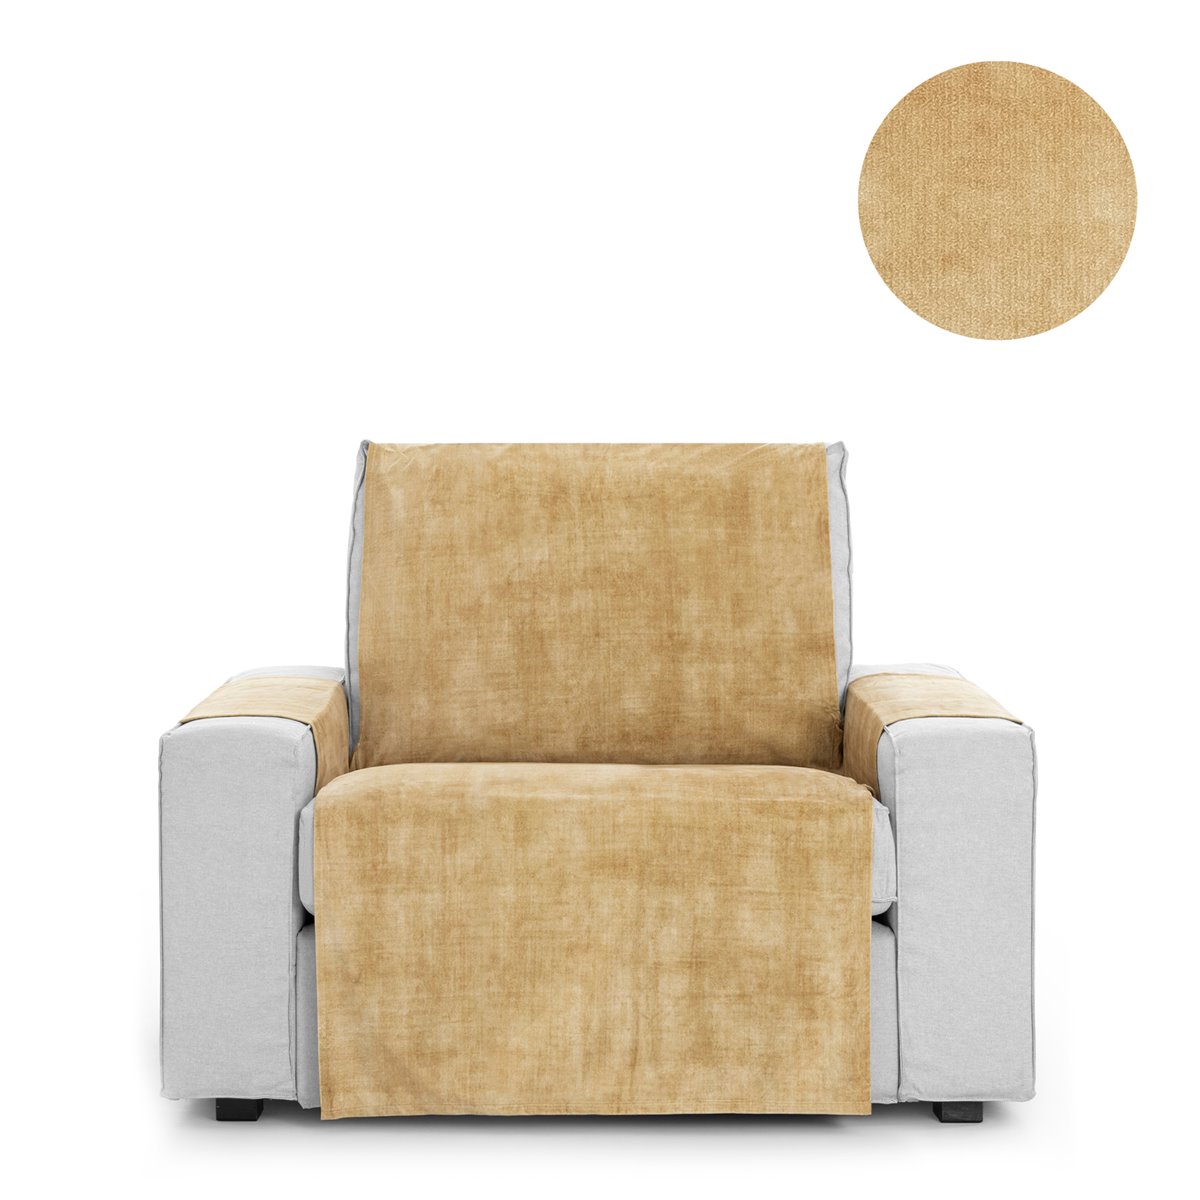 Cubre sofá chaise longue izquierdo aterciopelado rosa 250-300 cm